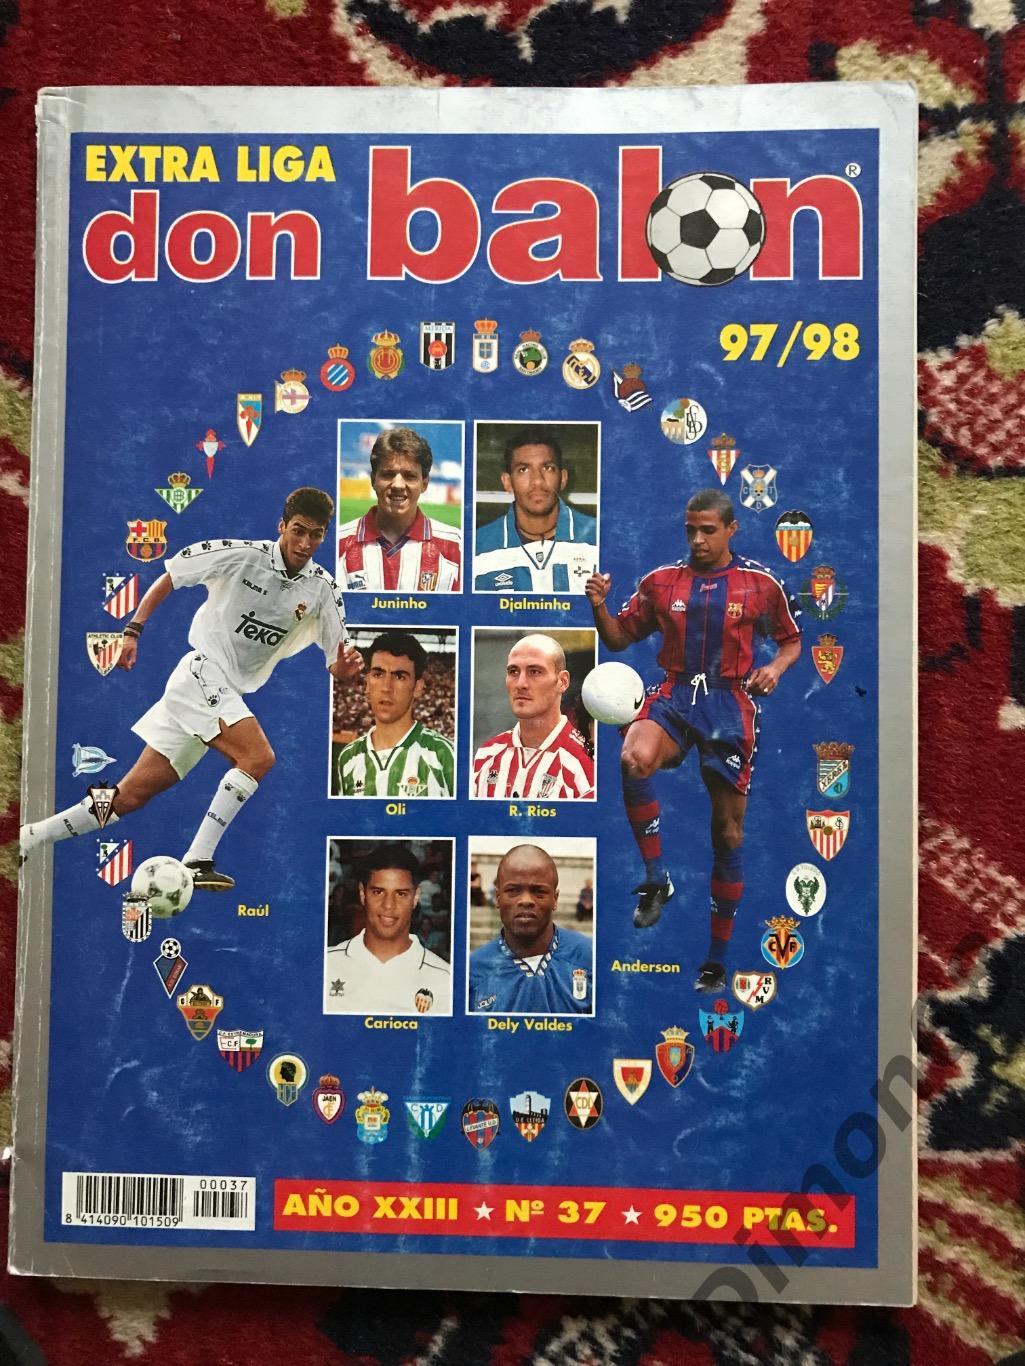 don balon спецвыпуск чем испании 97/98 не целый